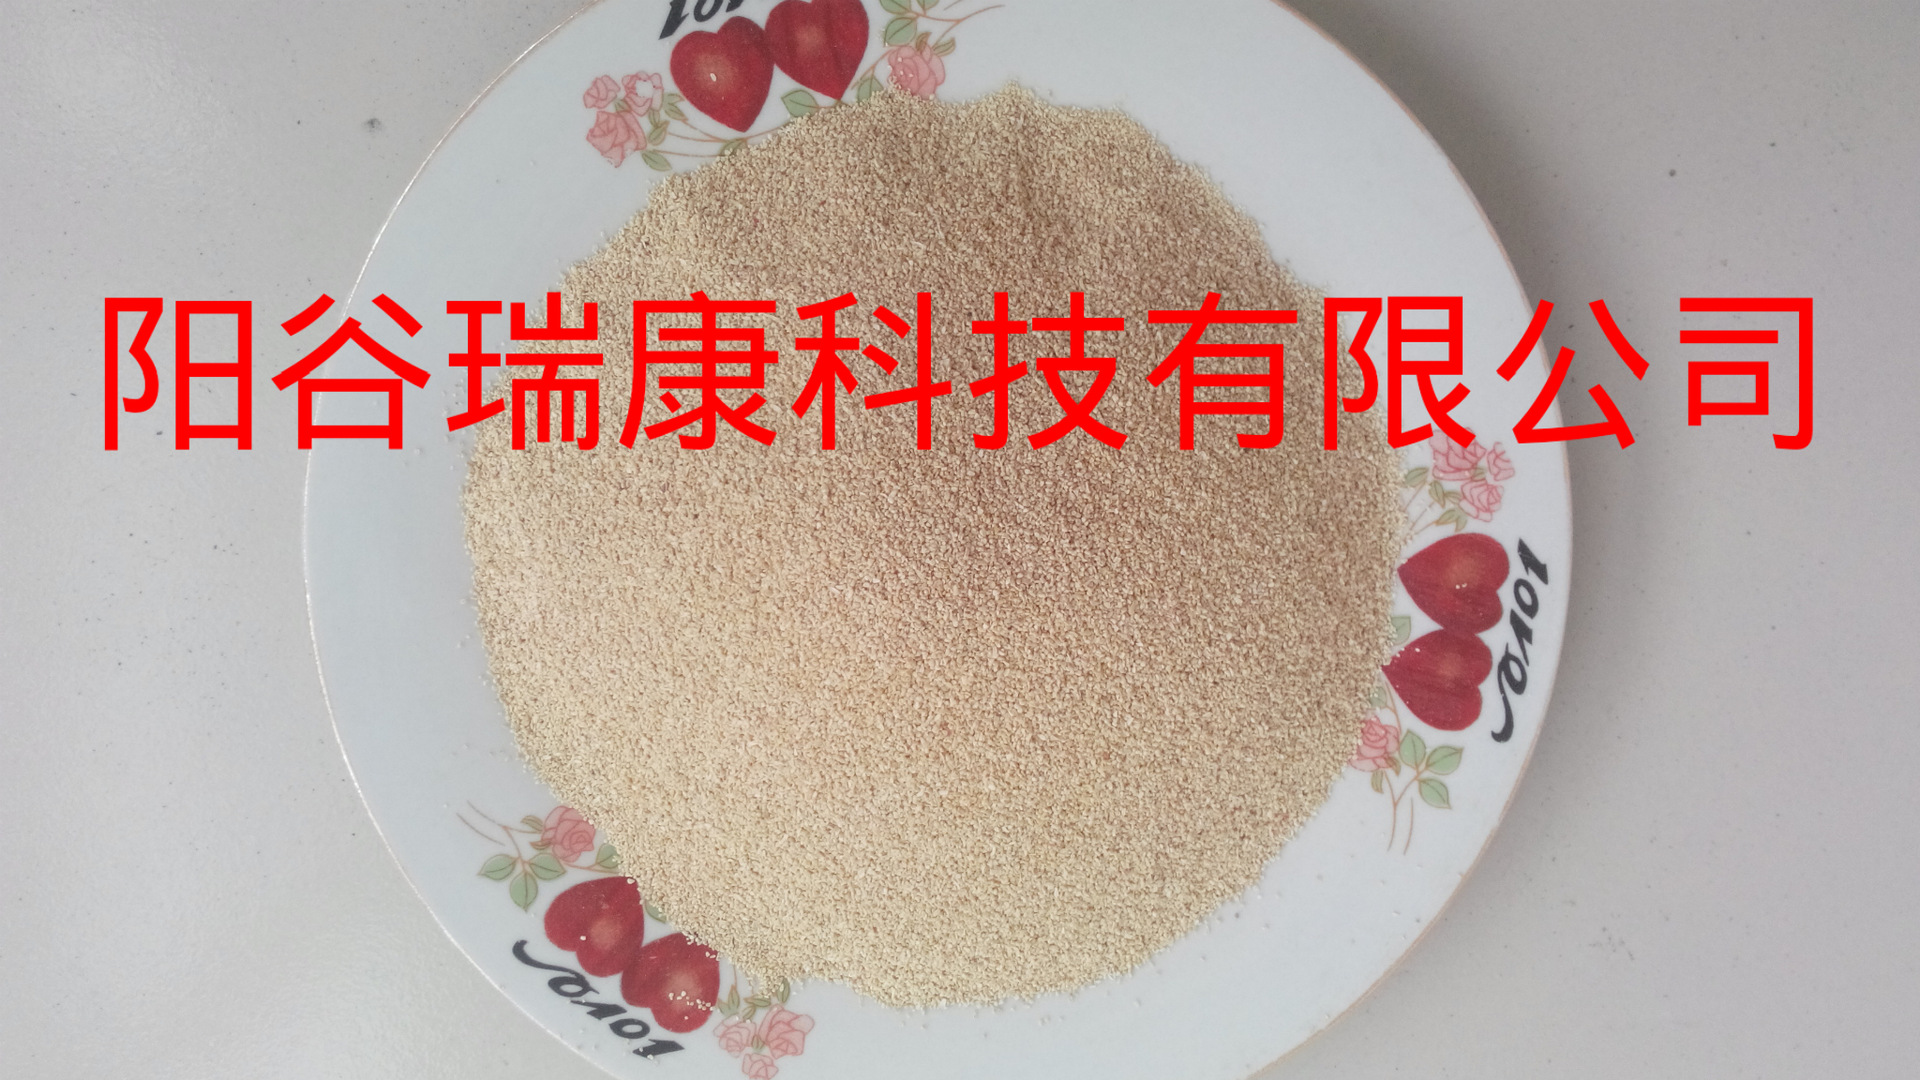 阳谷瑞康科技有限公司常年销售动物饲料用玉米芯细粉 玉米芯细粉批发 植物性饲料玉米芯细